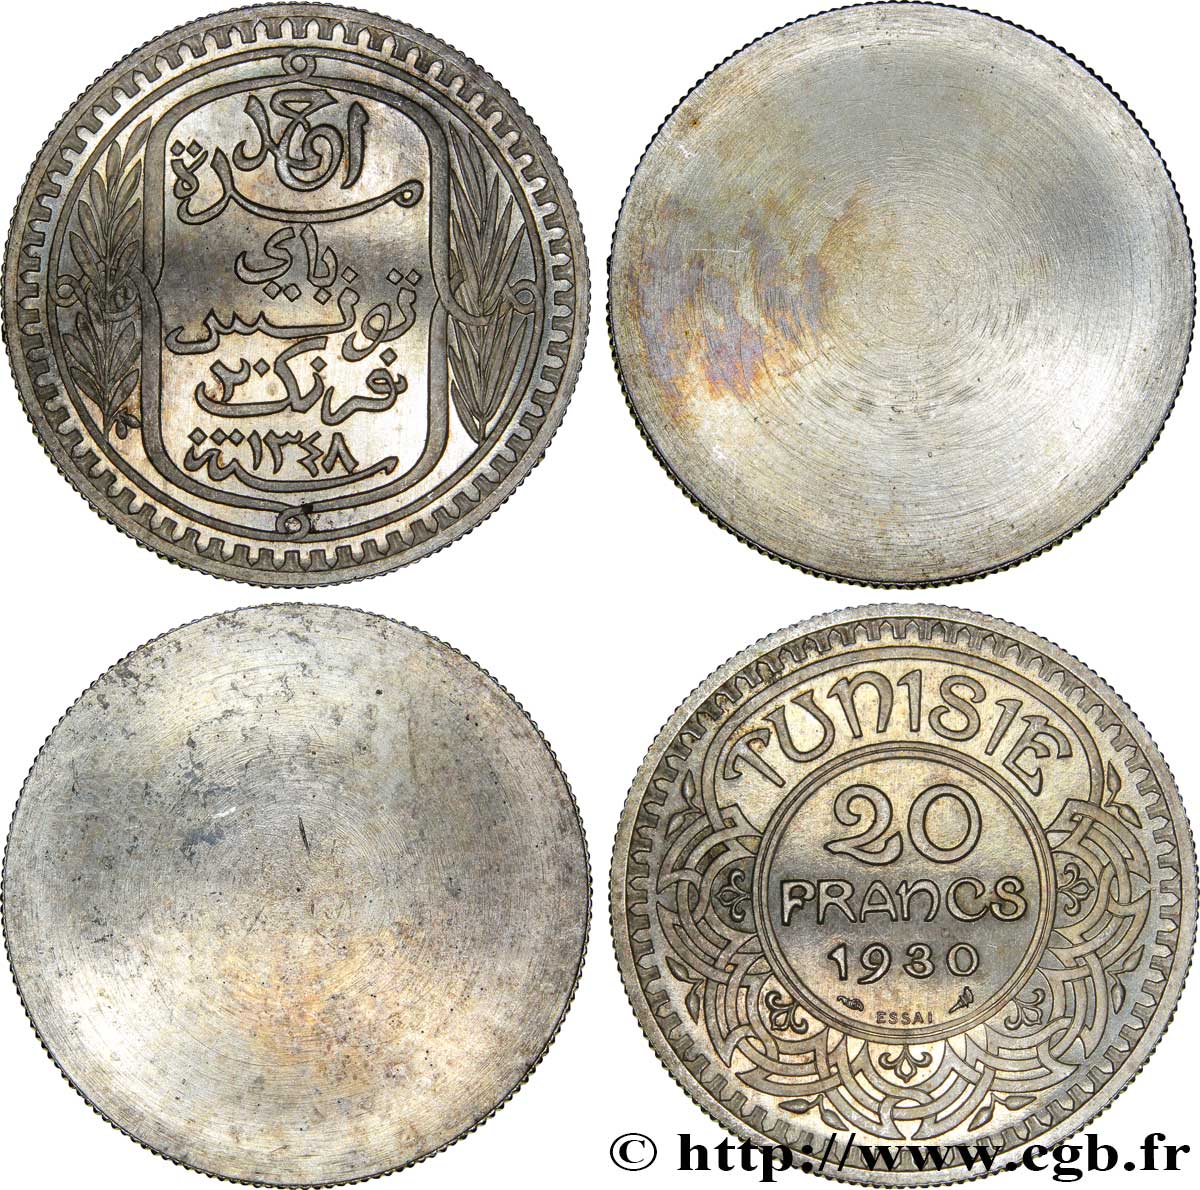 TUNISIA - Protettorato Francese Paire d’essais unifaces de 20 Francs au nom de Ahmed Bey 1930 Paris MS 